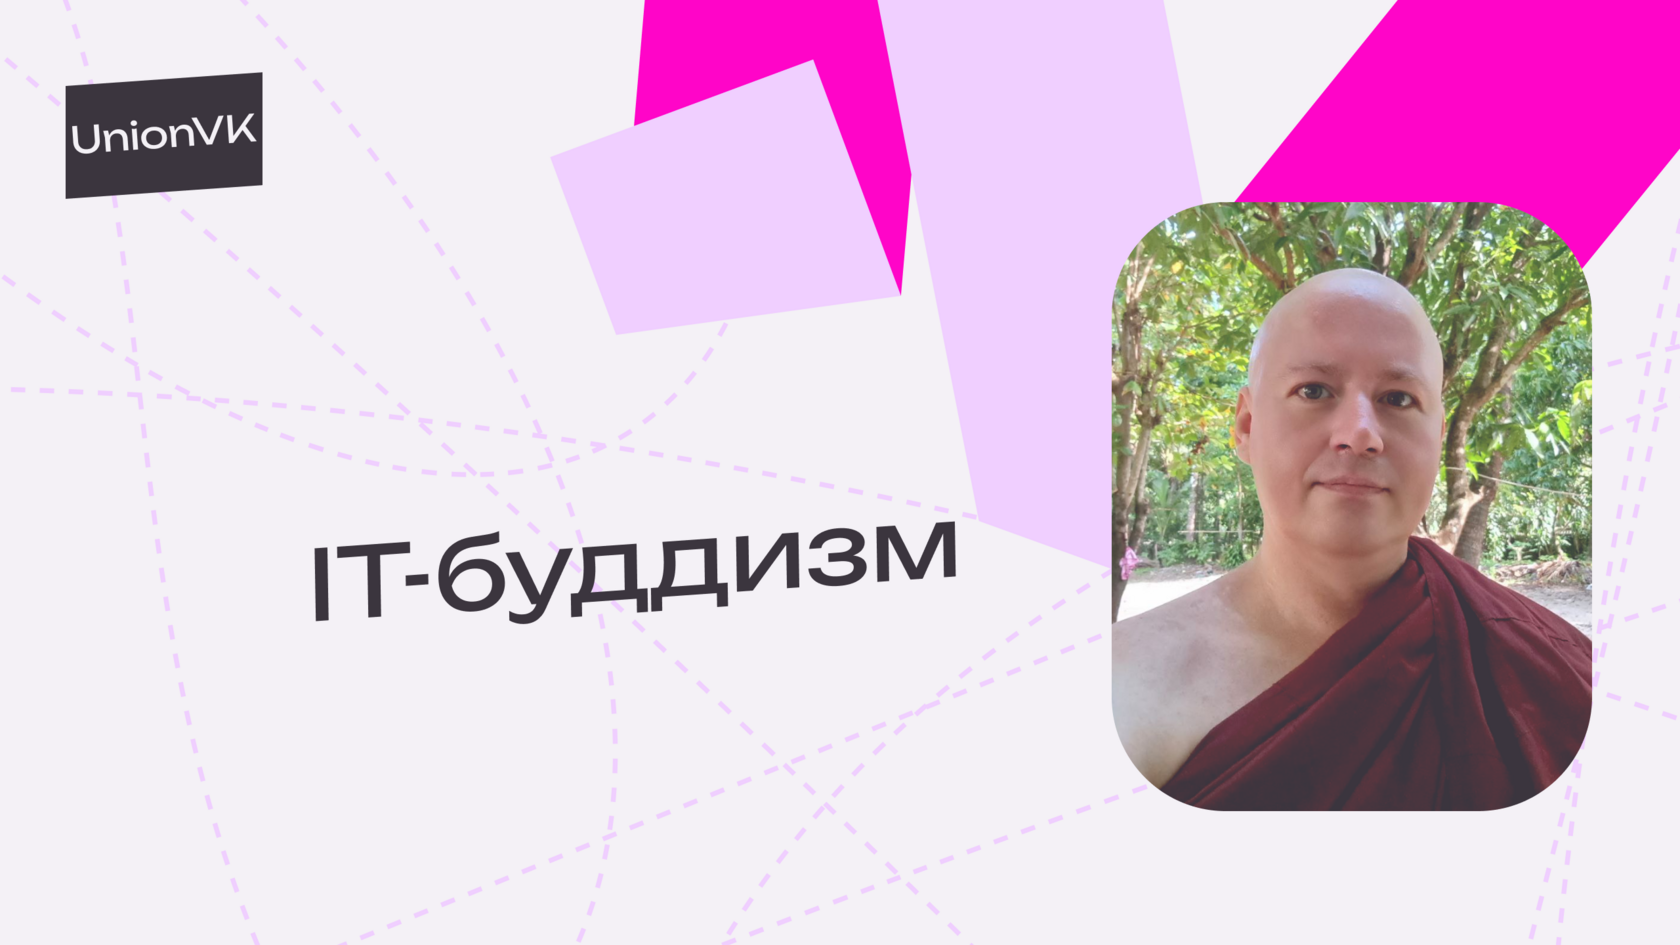 IT-буддизм, UnionVK, Евгений Кузнецов